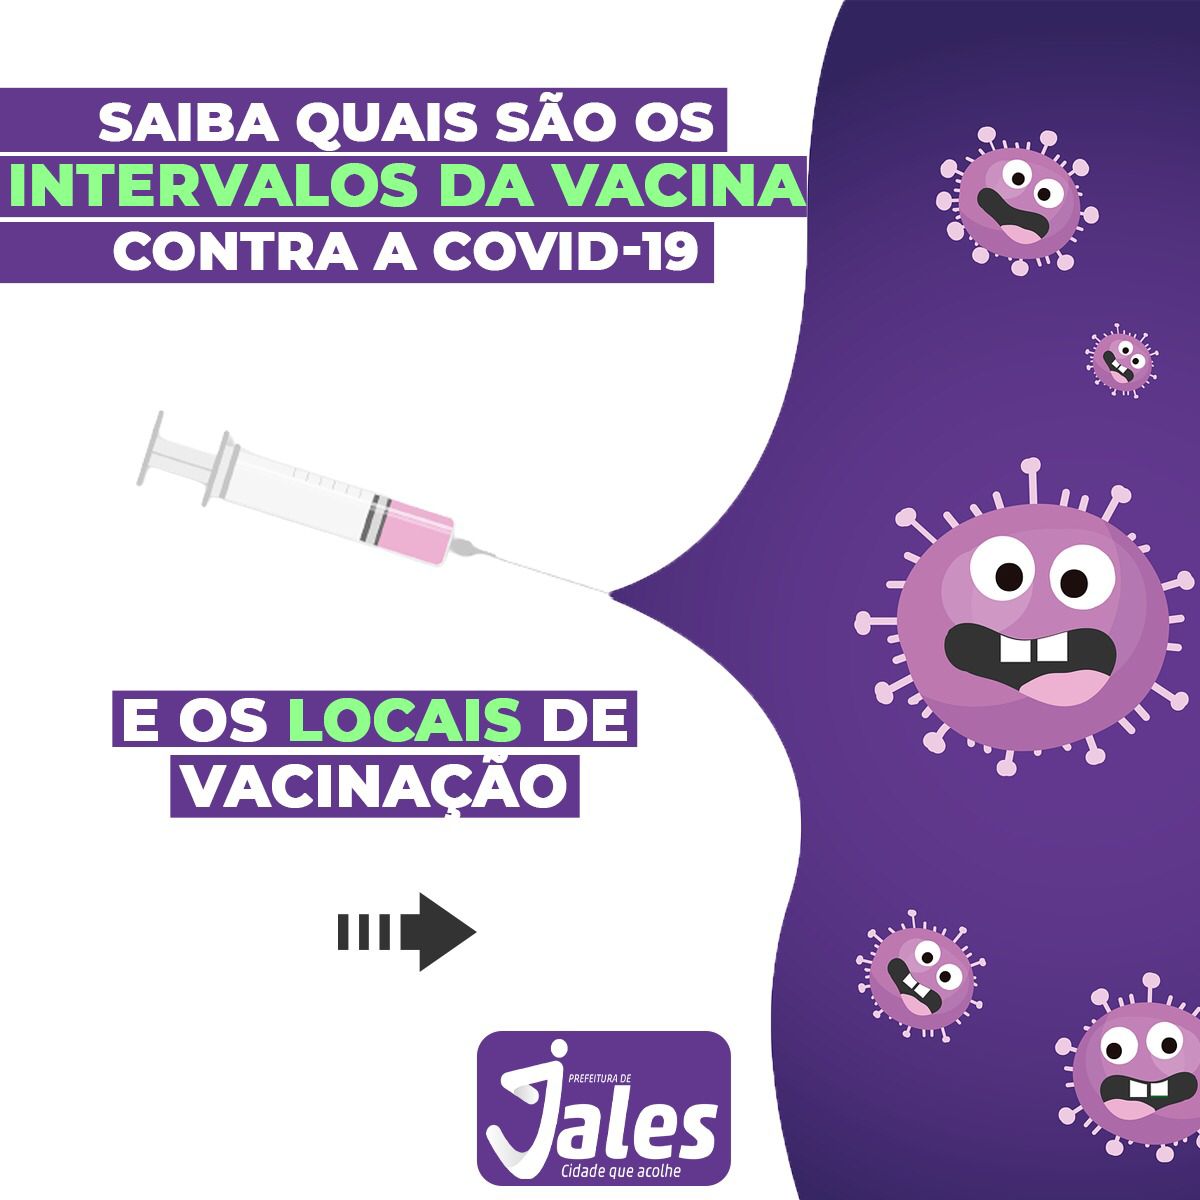 Jales - O município continua imunizando contra a Covid-19.